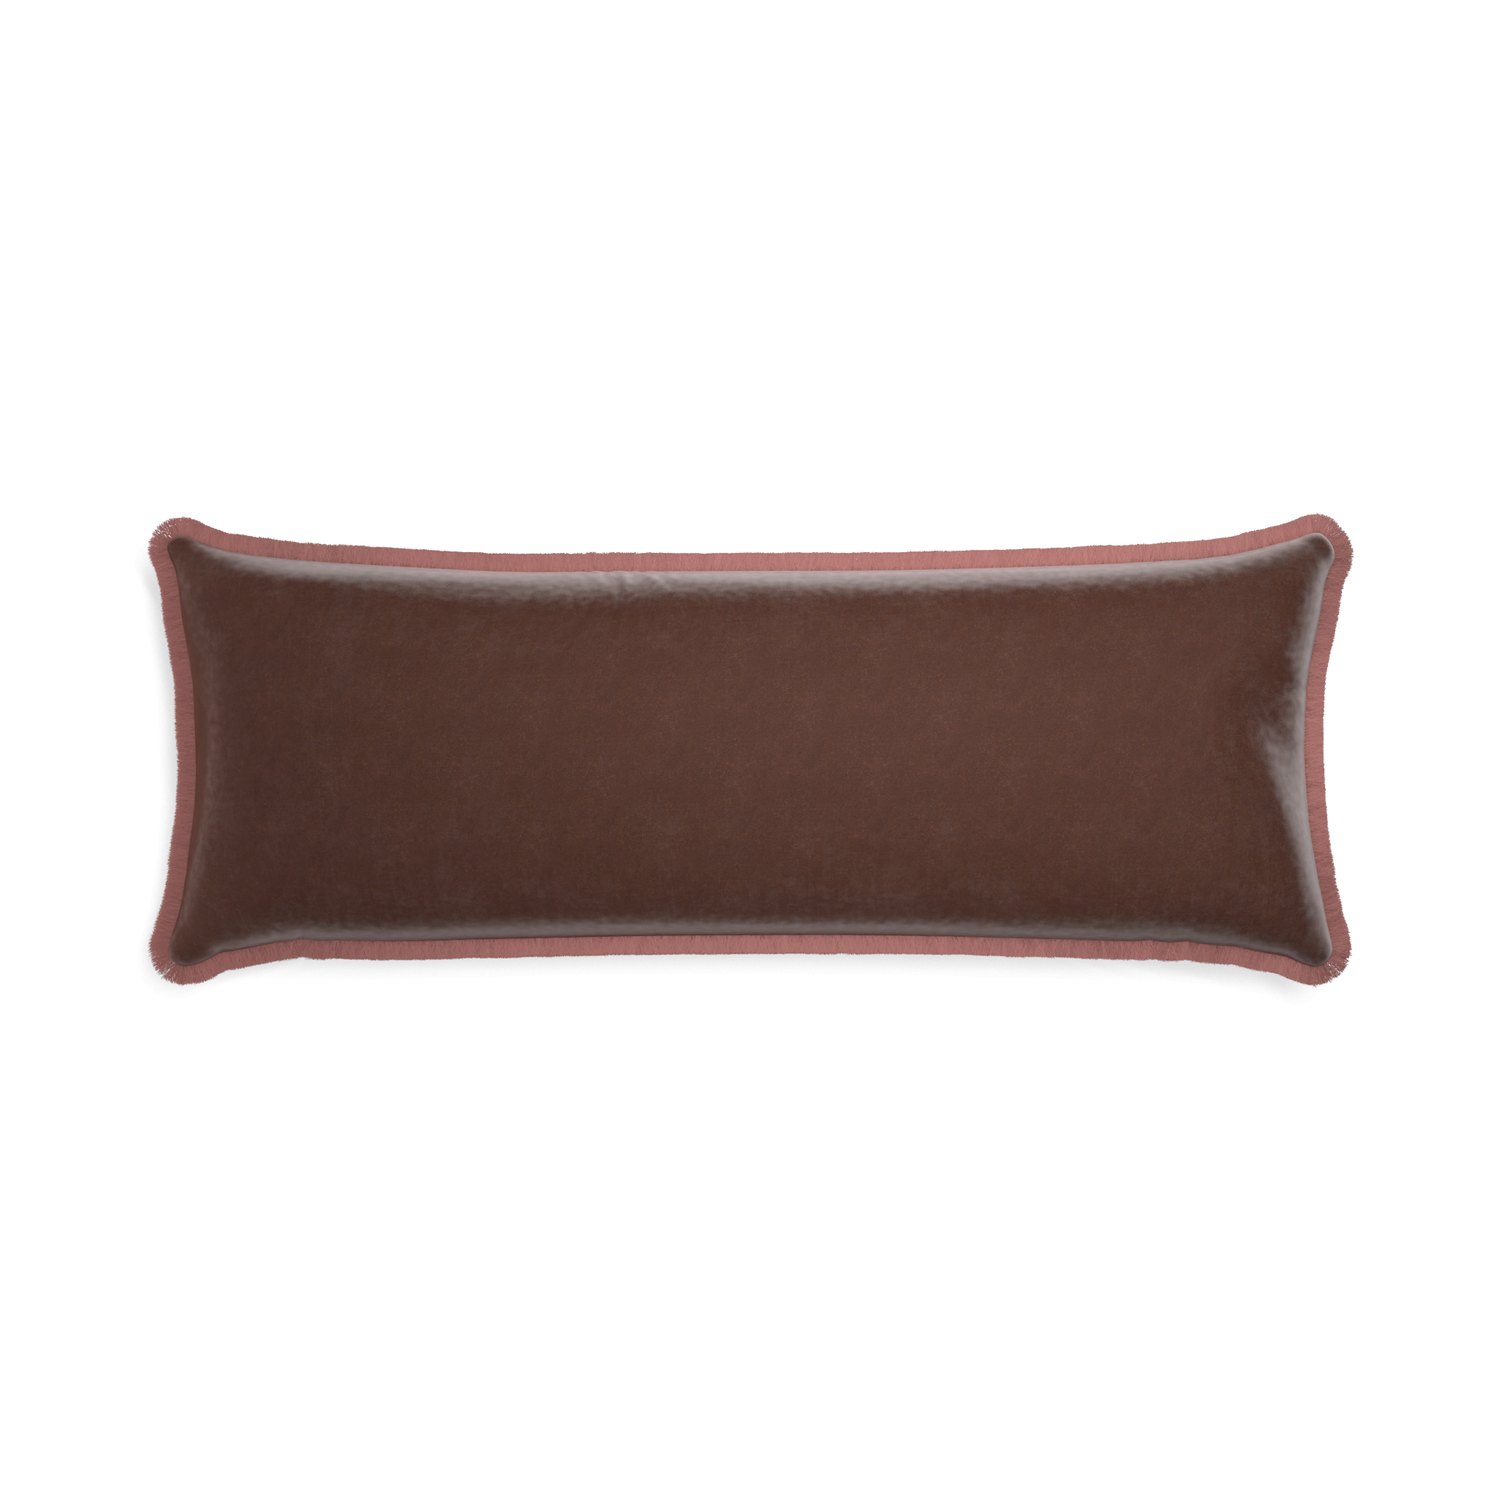 rectangle brown velvet pillow with dusty rose fringe